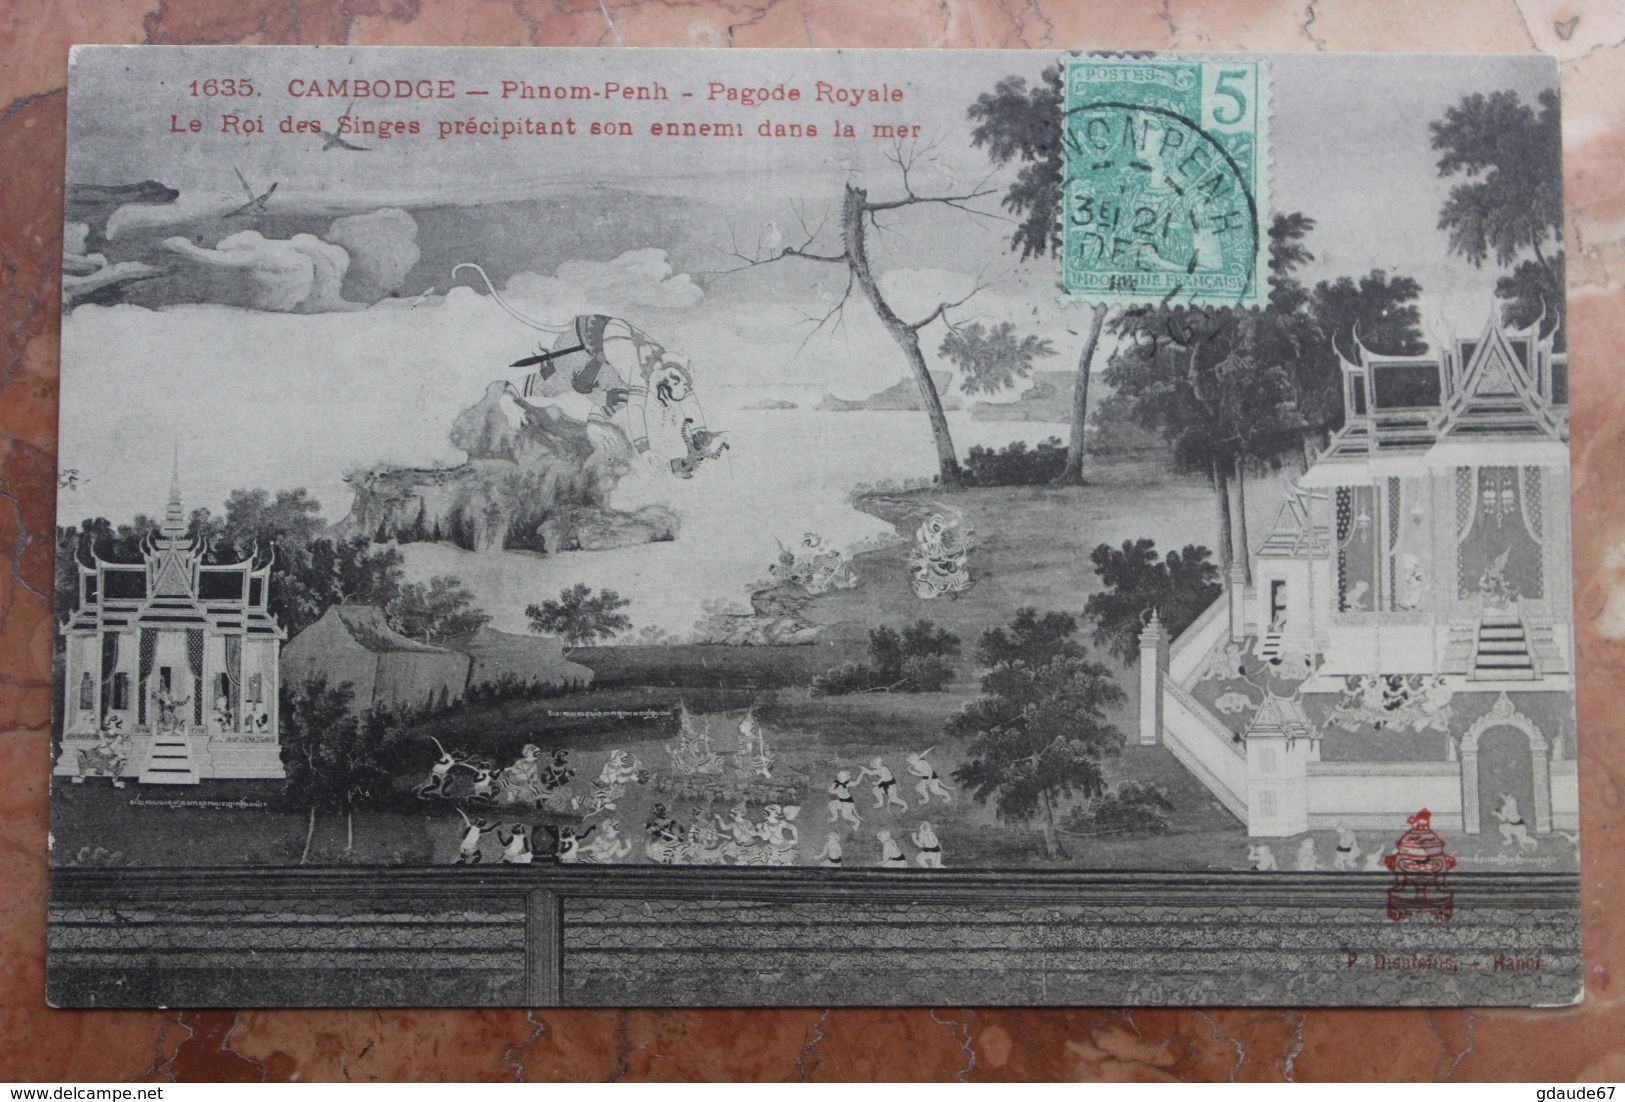 PHNOM-PENH (CAMBODGE) - 1635. PAGODE ROYALE - LE ROI DES SINGES PRECIPITANT SON ENNEMI DANS LA MER - Cambodia